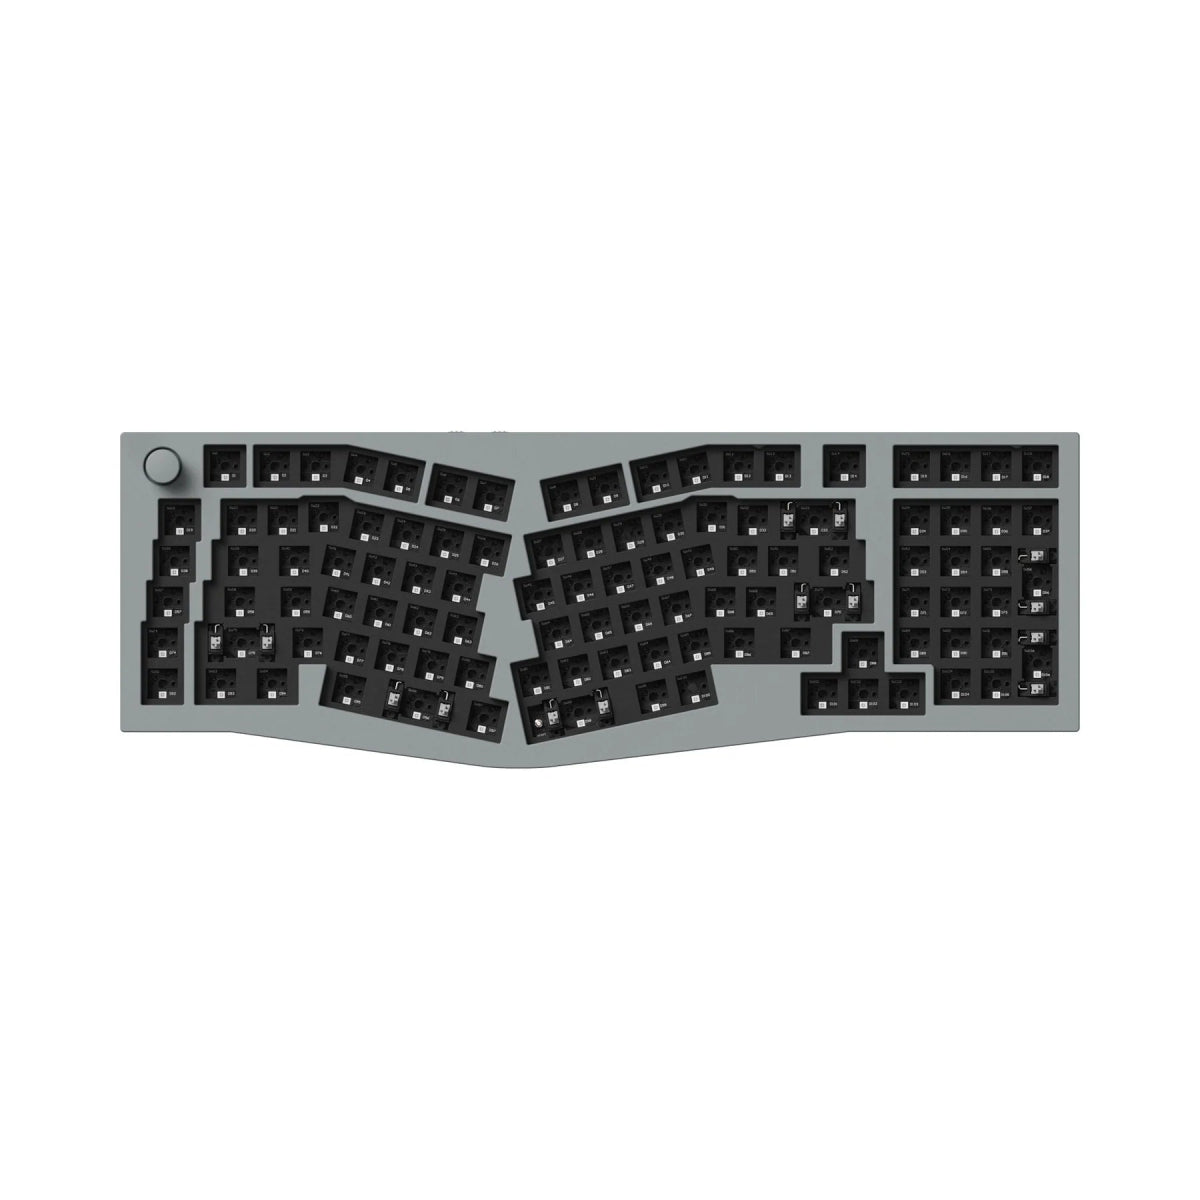 Keychron Q13 Pro 96% Alice Wireless Keyboard - Divinikey